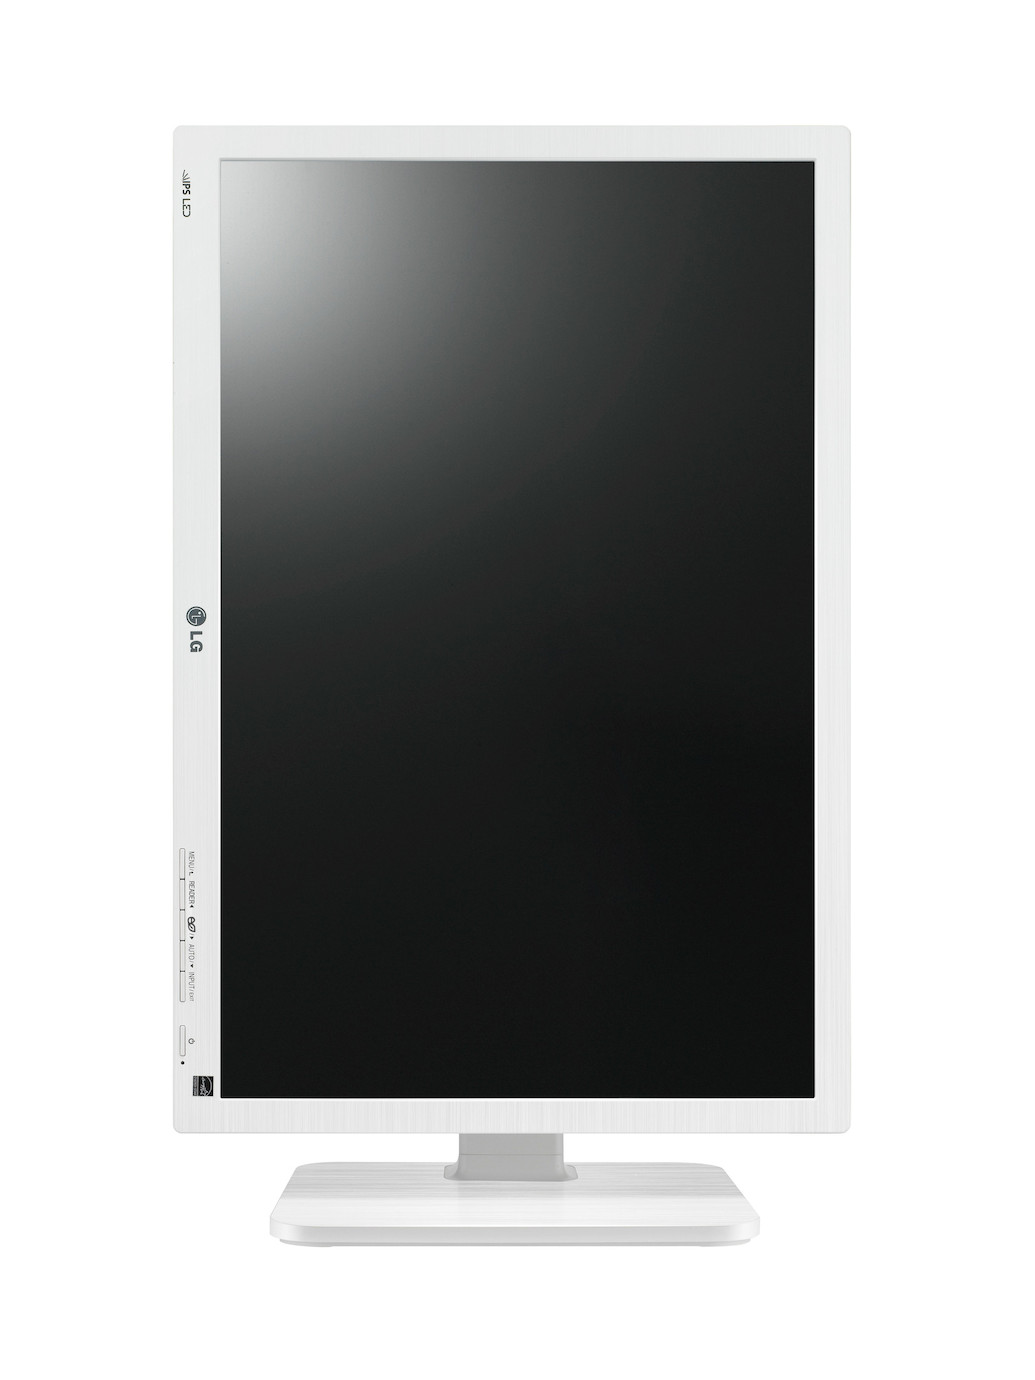 Vorschau: LG 22BK55WY-W 22" LCD Monitor mit WSXGA+ und 5ms Reaktionszeit